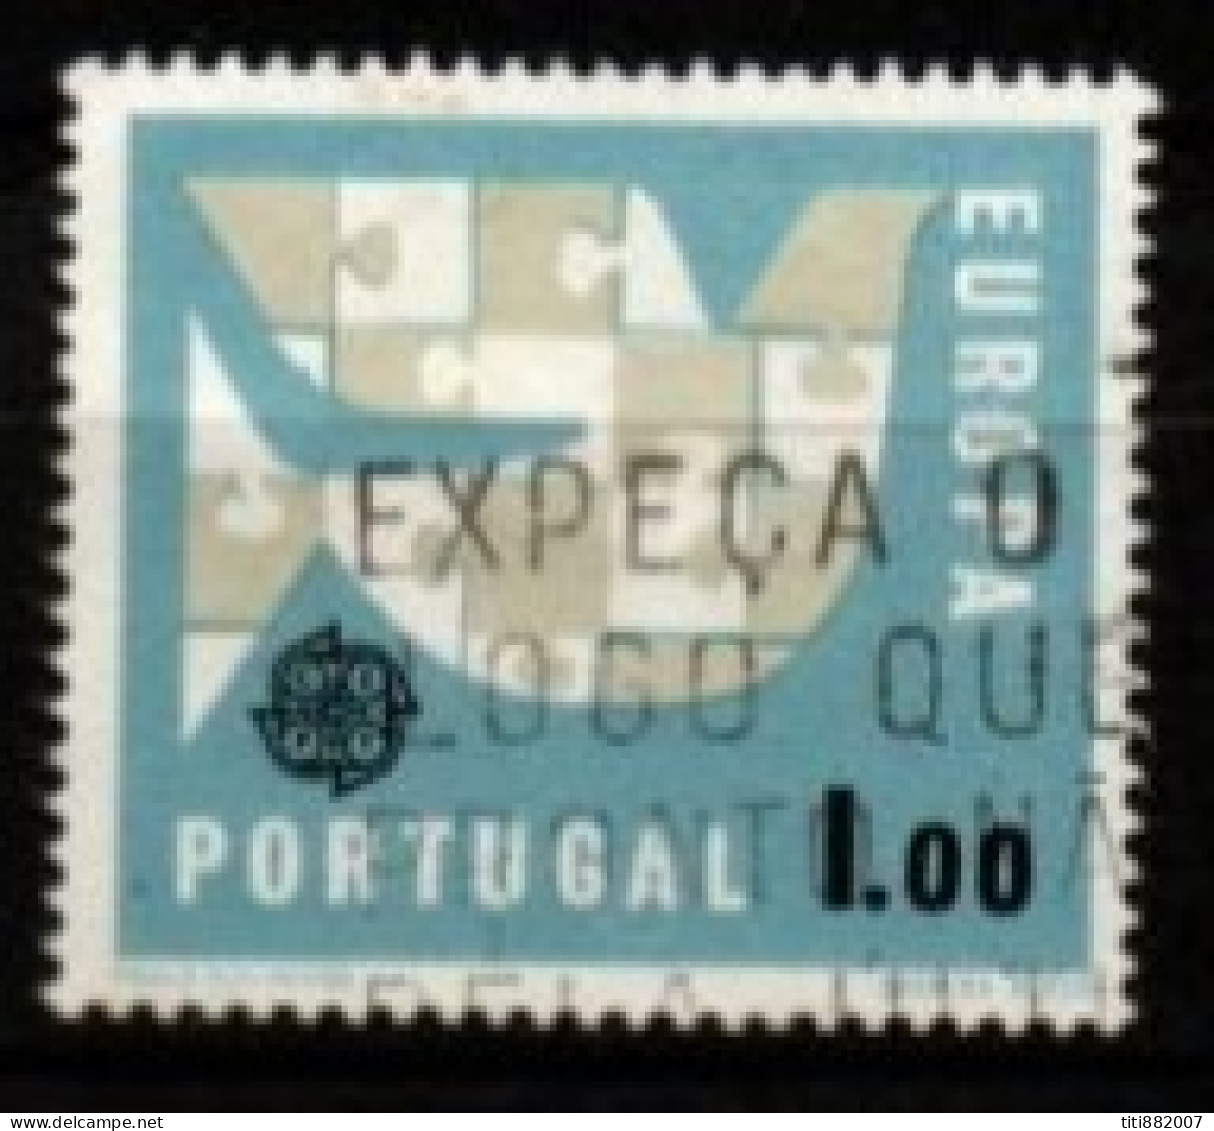 PORTUGAL  -   1963.  Y&T N° 929 Oblitéré  .  EUROPA - Oblitérés